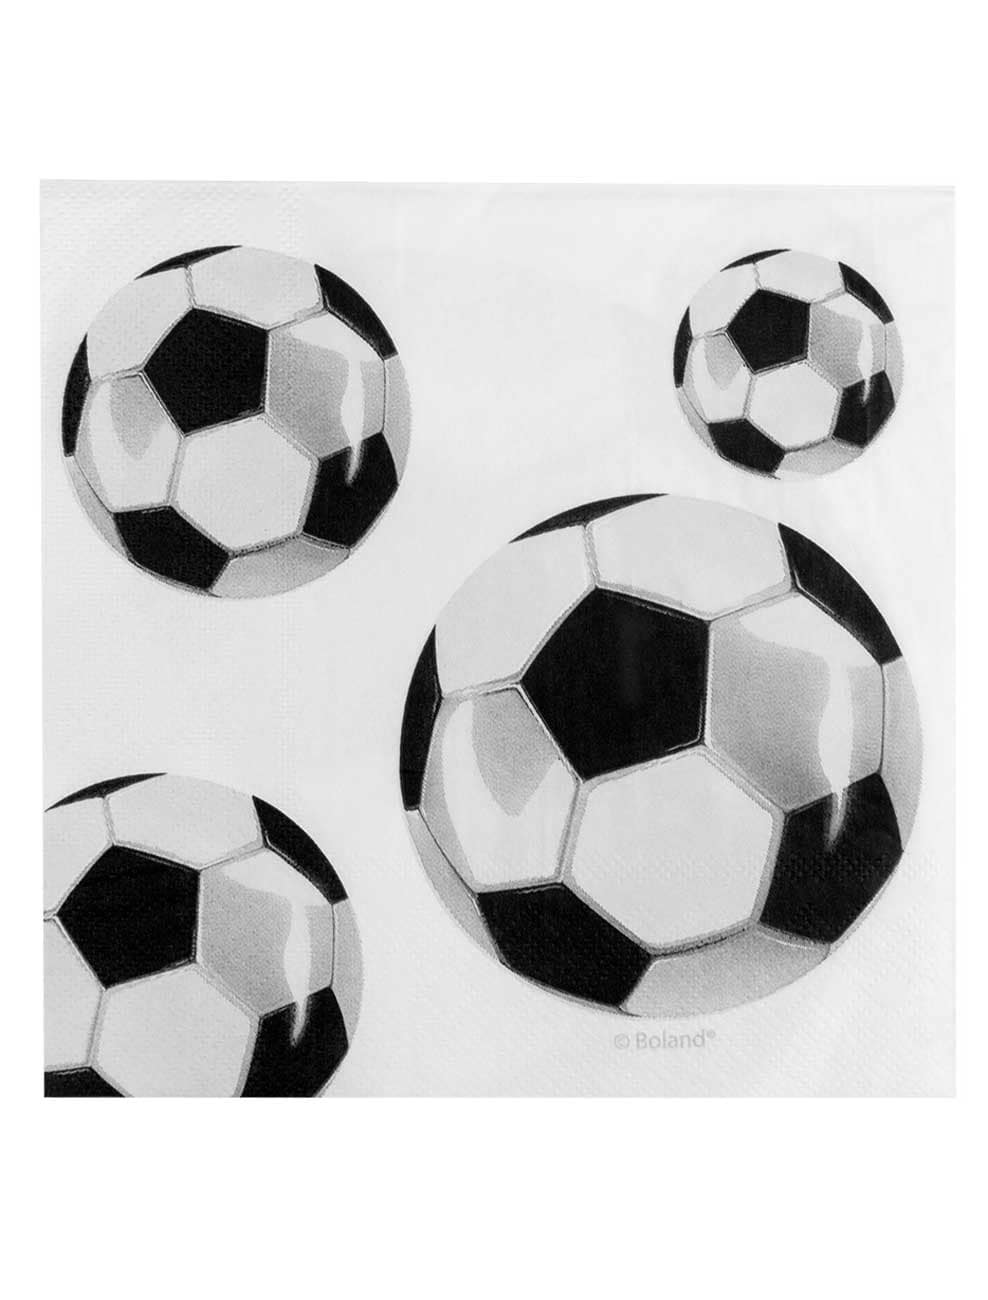 Servietten Fußball 20 Stk. schwarz/weiß